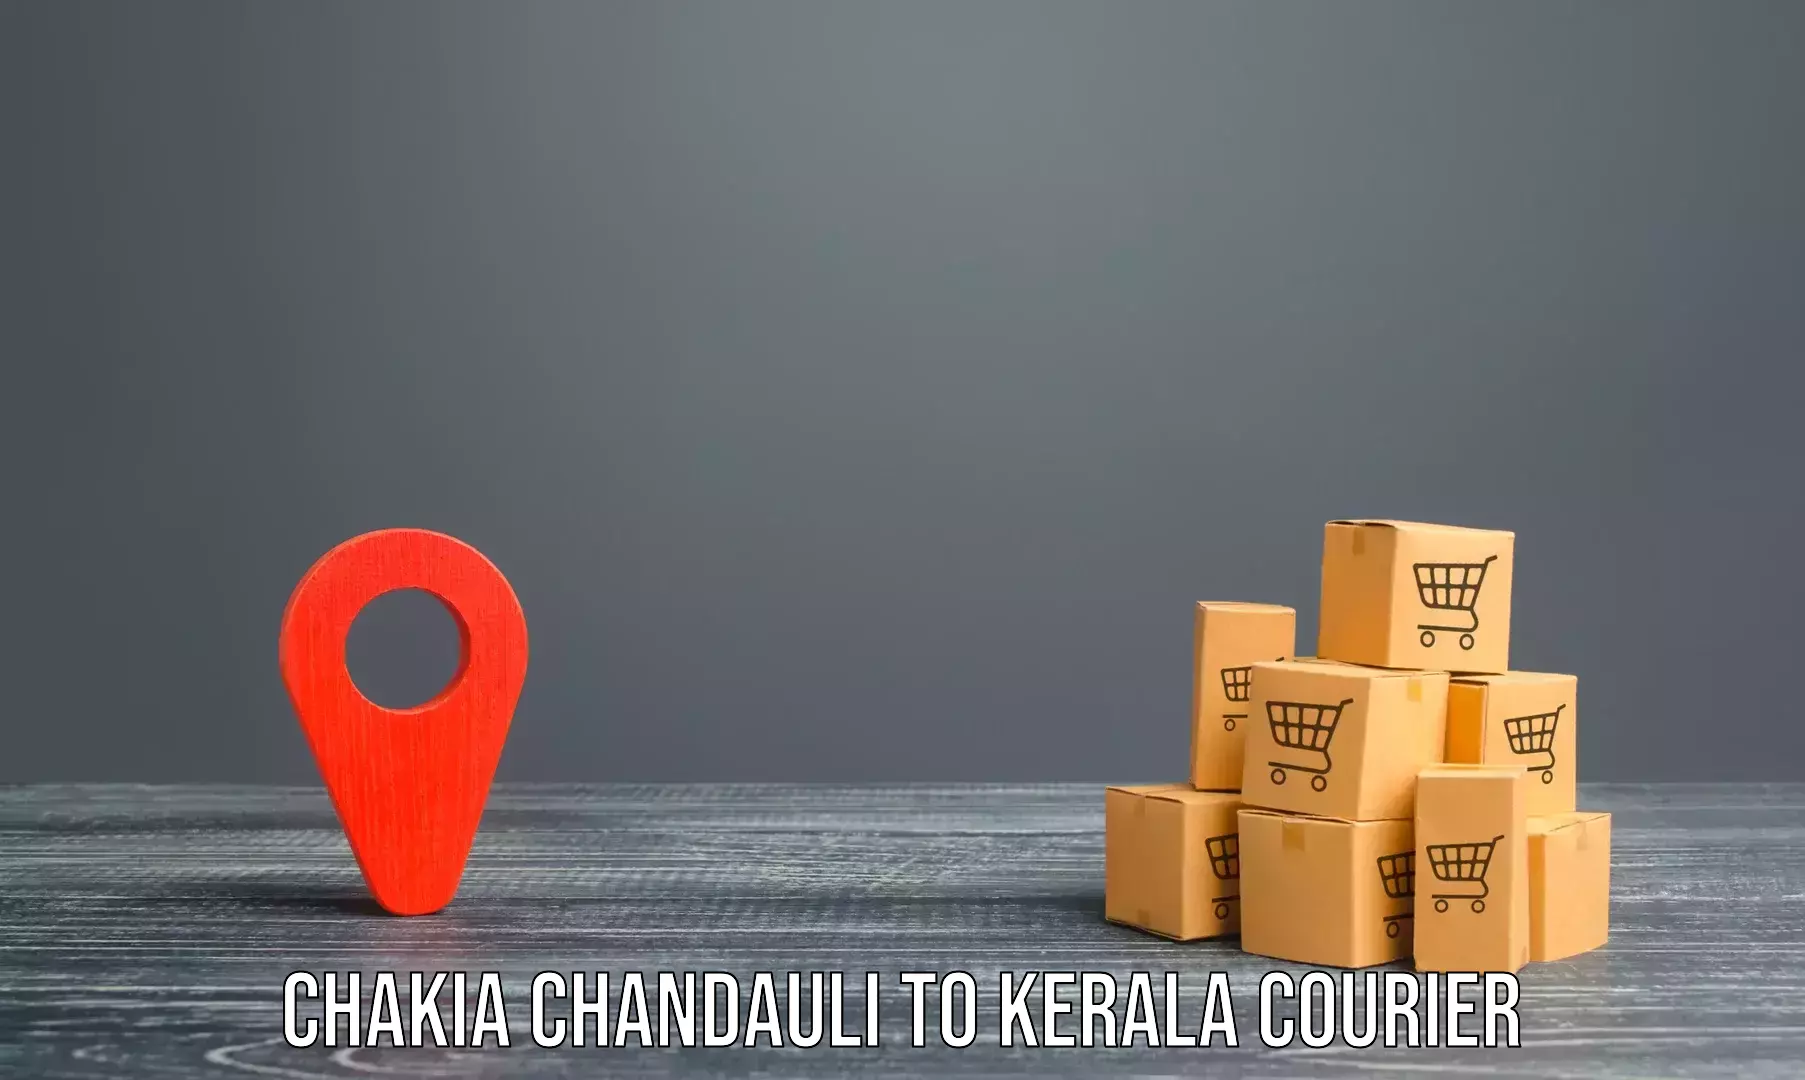 Professional moving assistance Chakia Chandauli to Palakkad